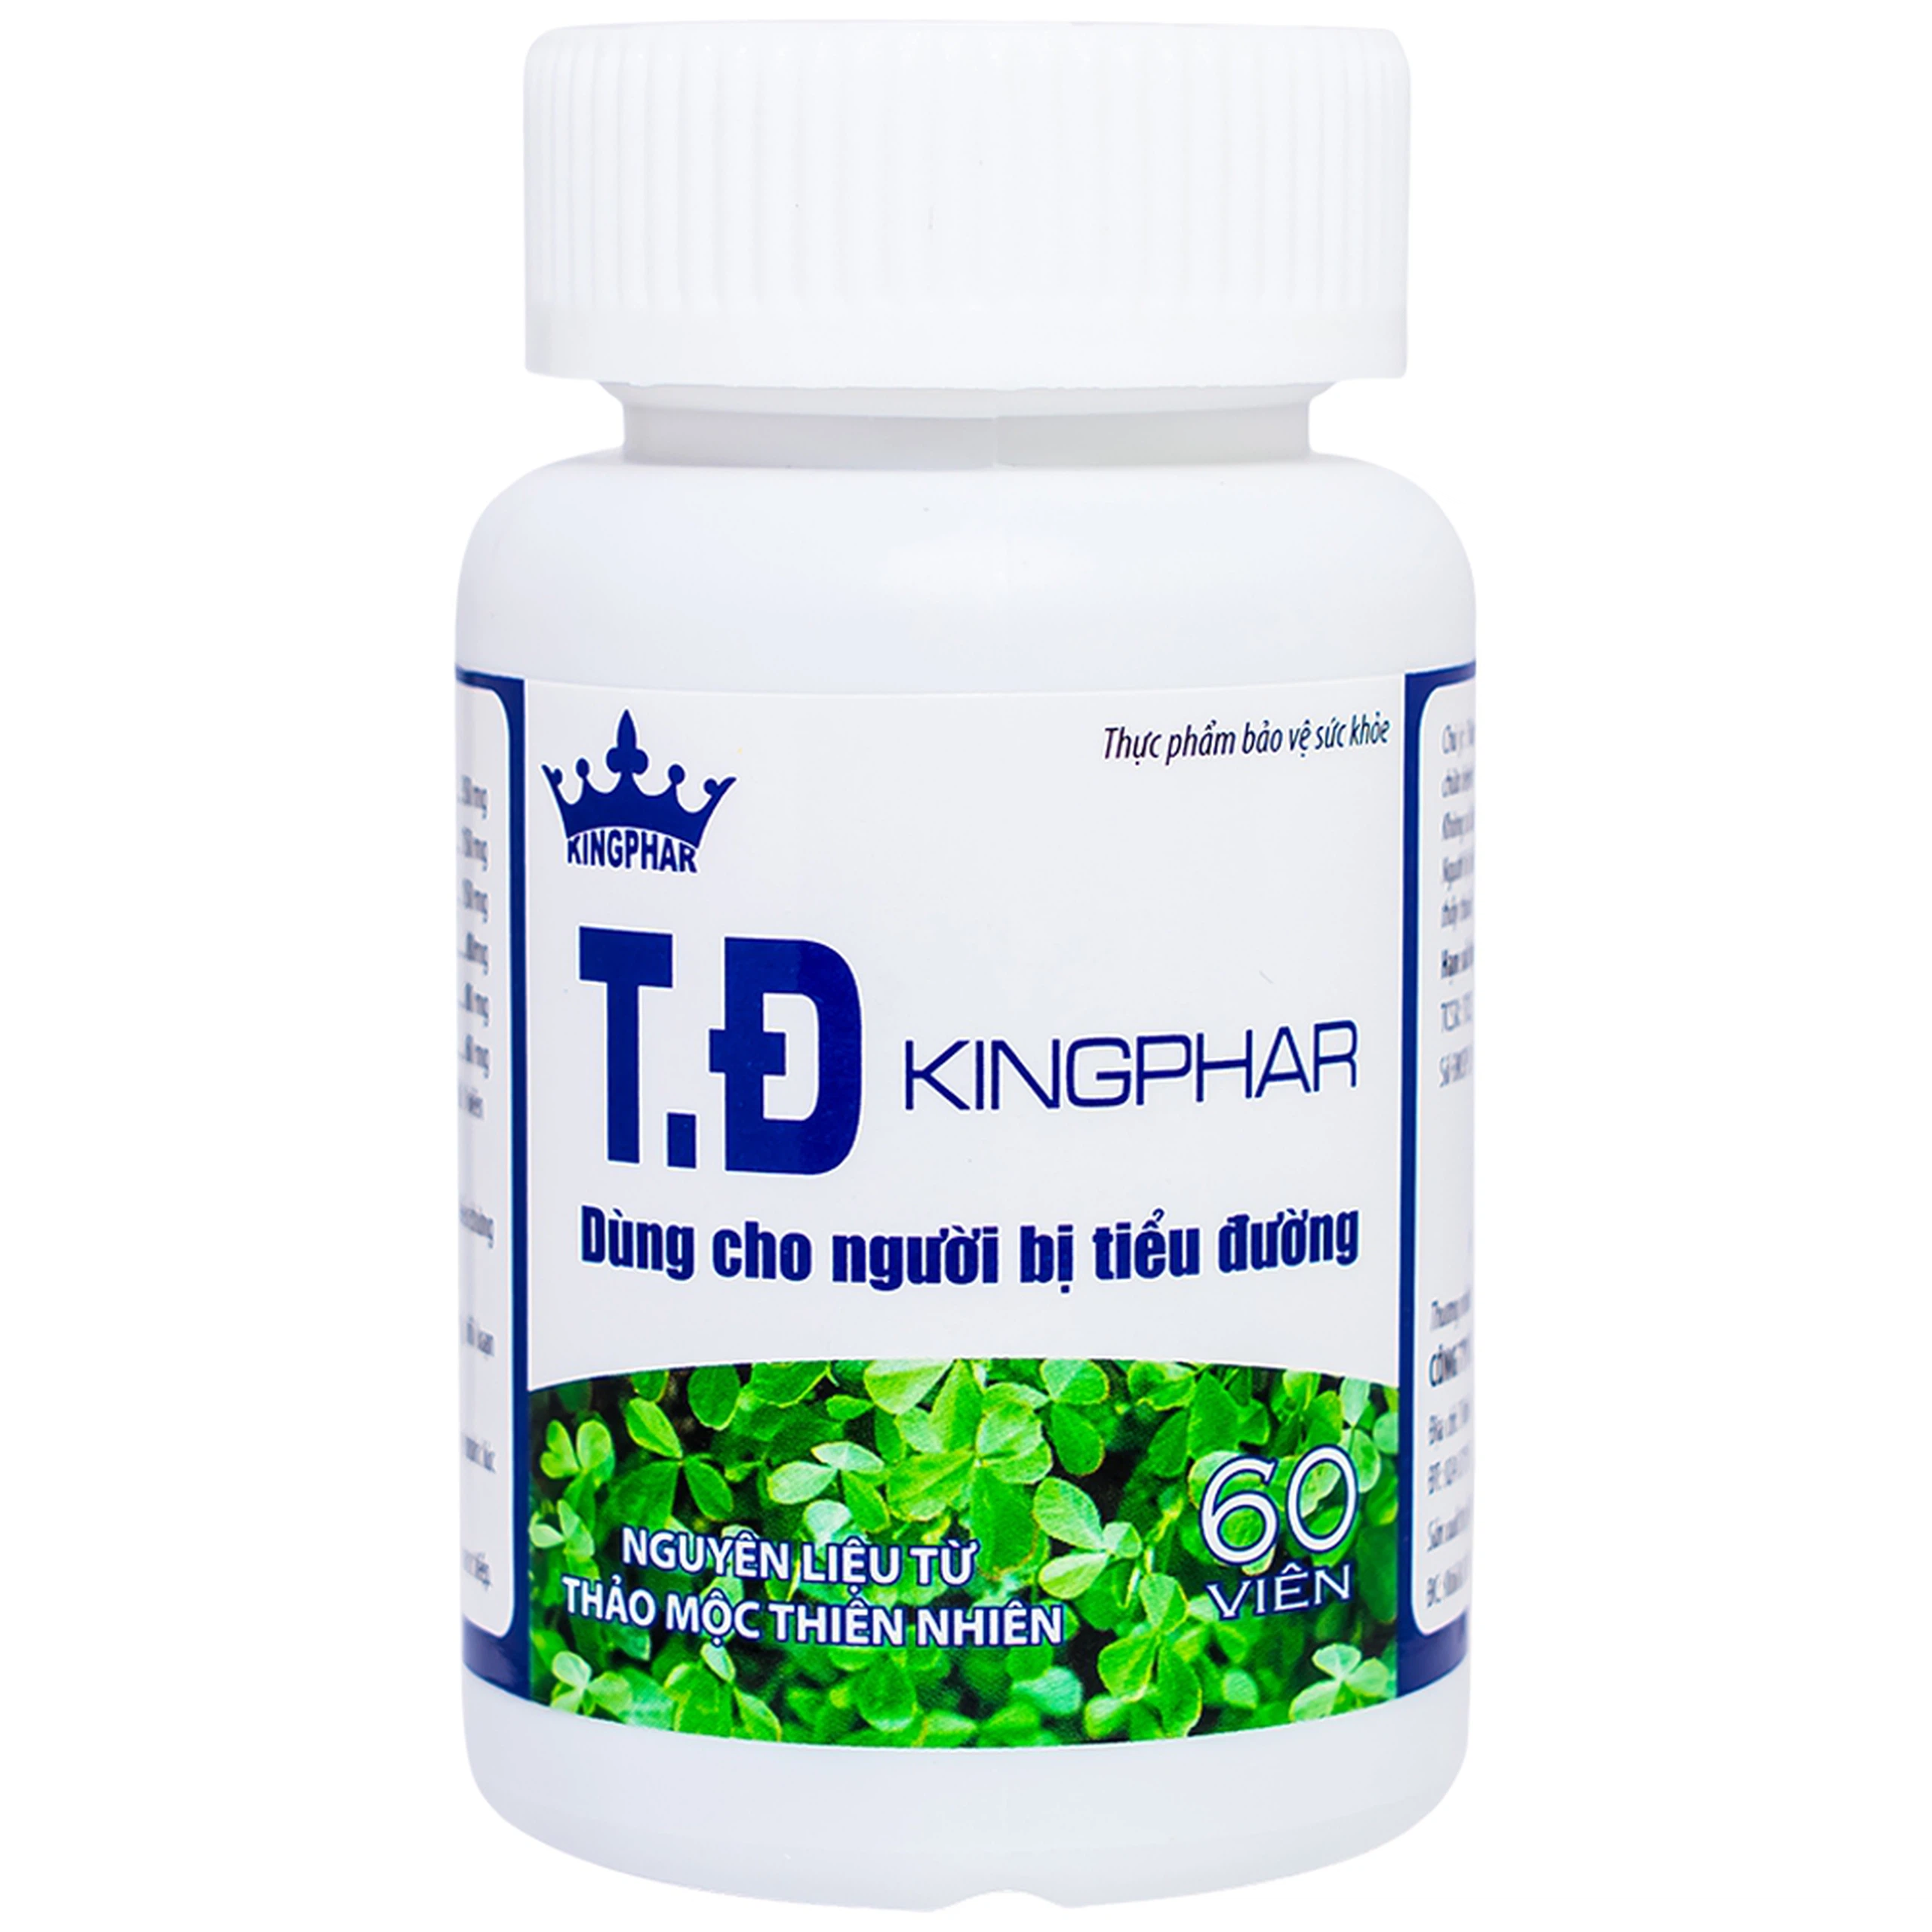 Viên uống T.Đ Kingphar dùng cho người bị tiểu đường (60 viên)